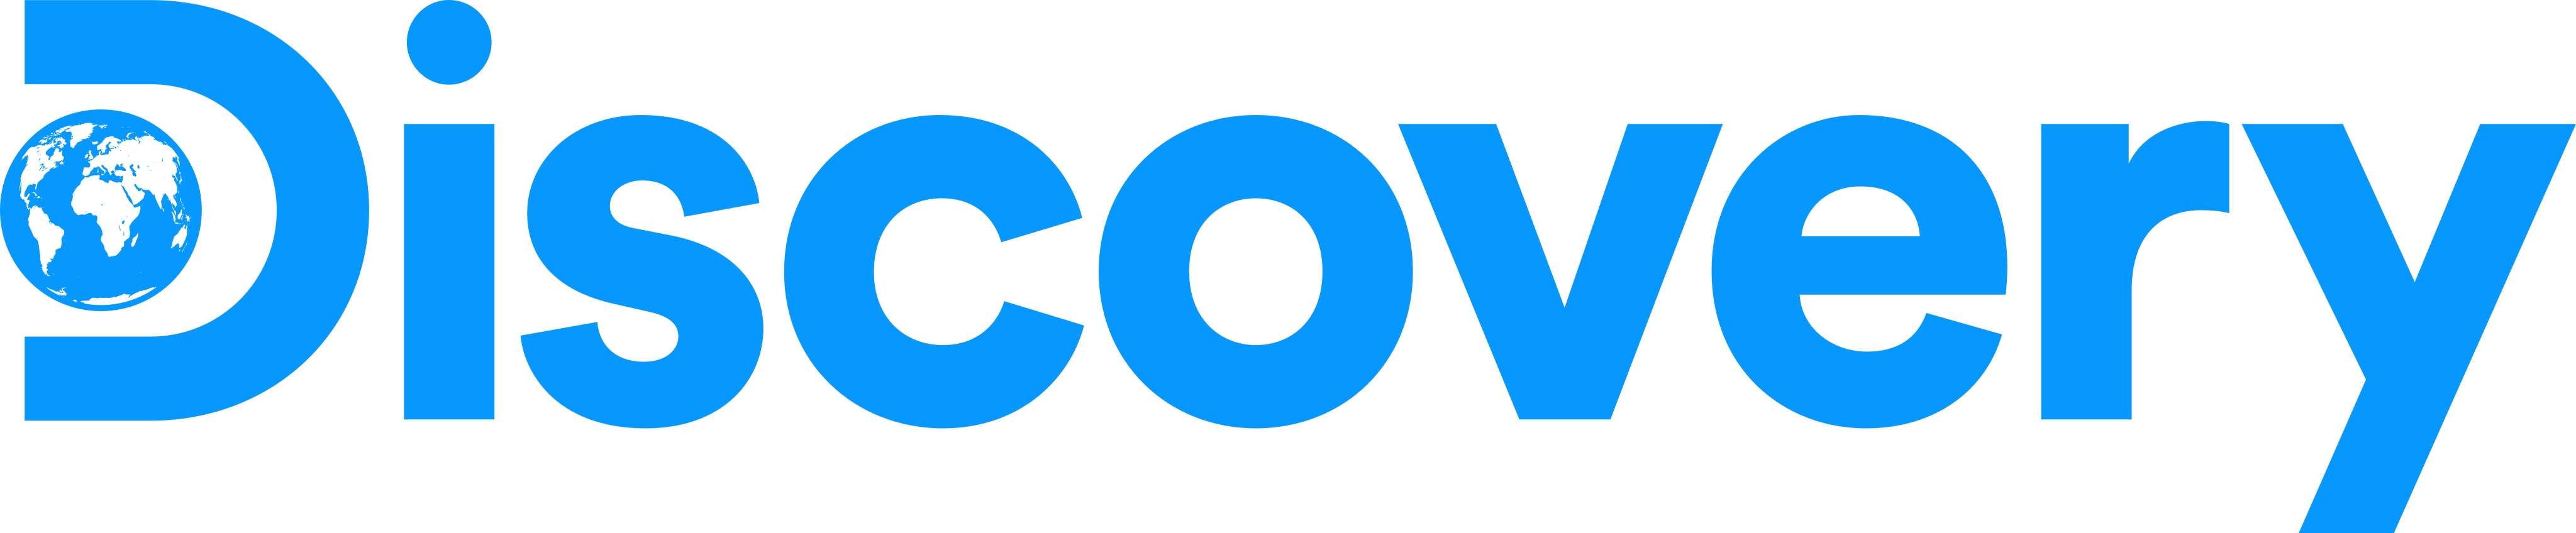 discovery channel logo 2 1 - Discovery Channel Logo